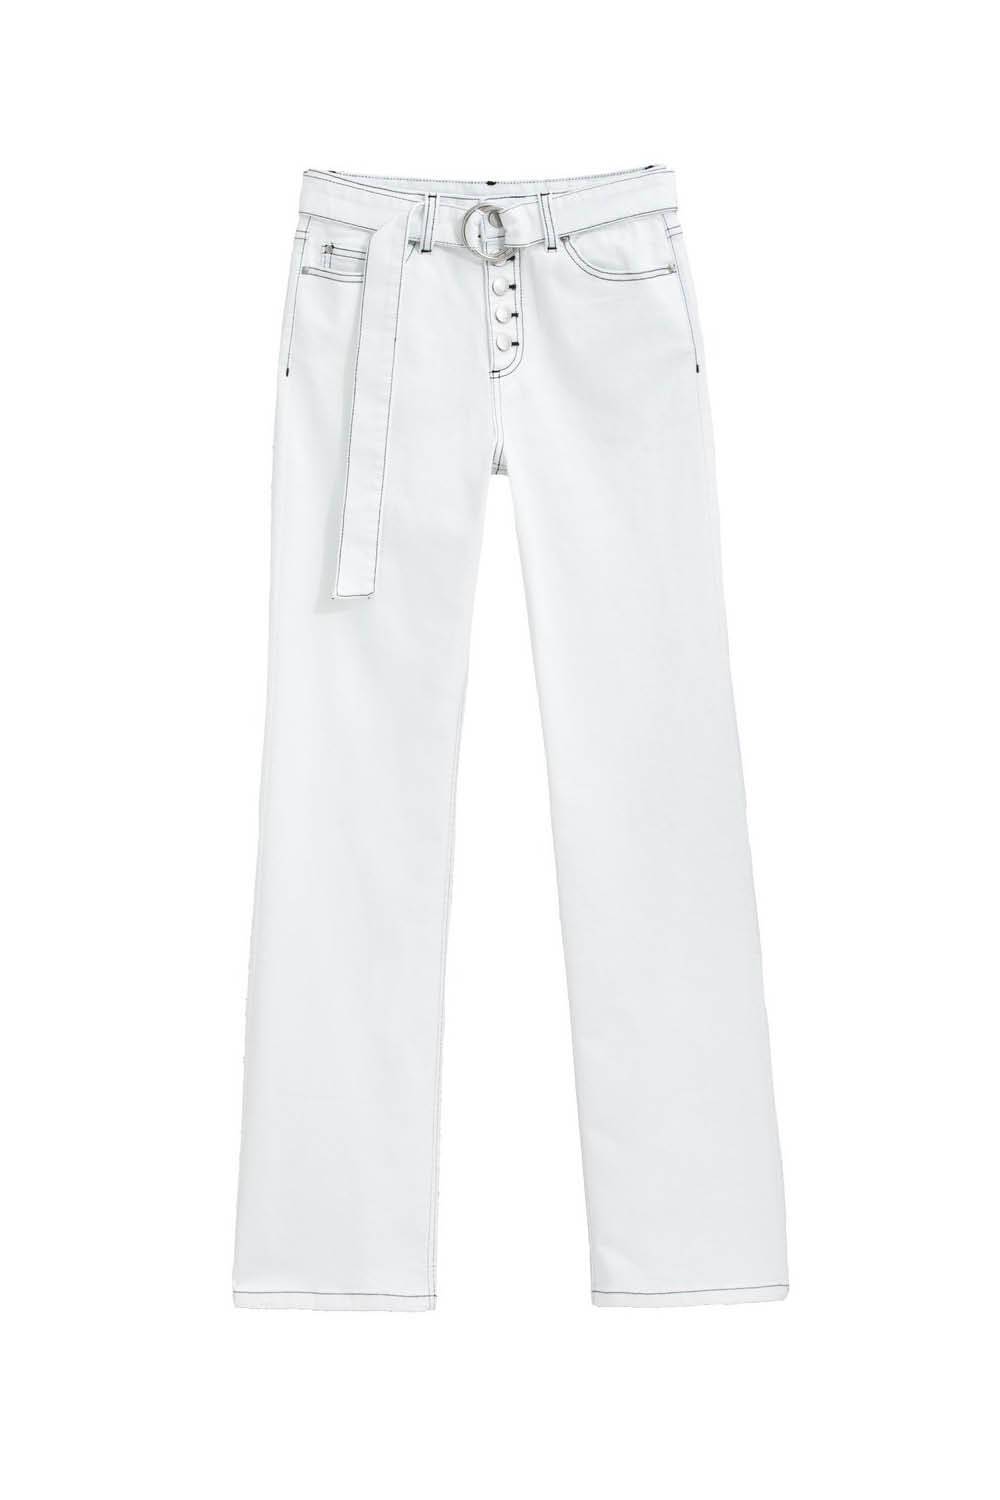 Fondo de armario de verano jeans blancos de La Redoute